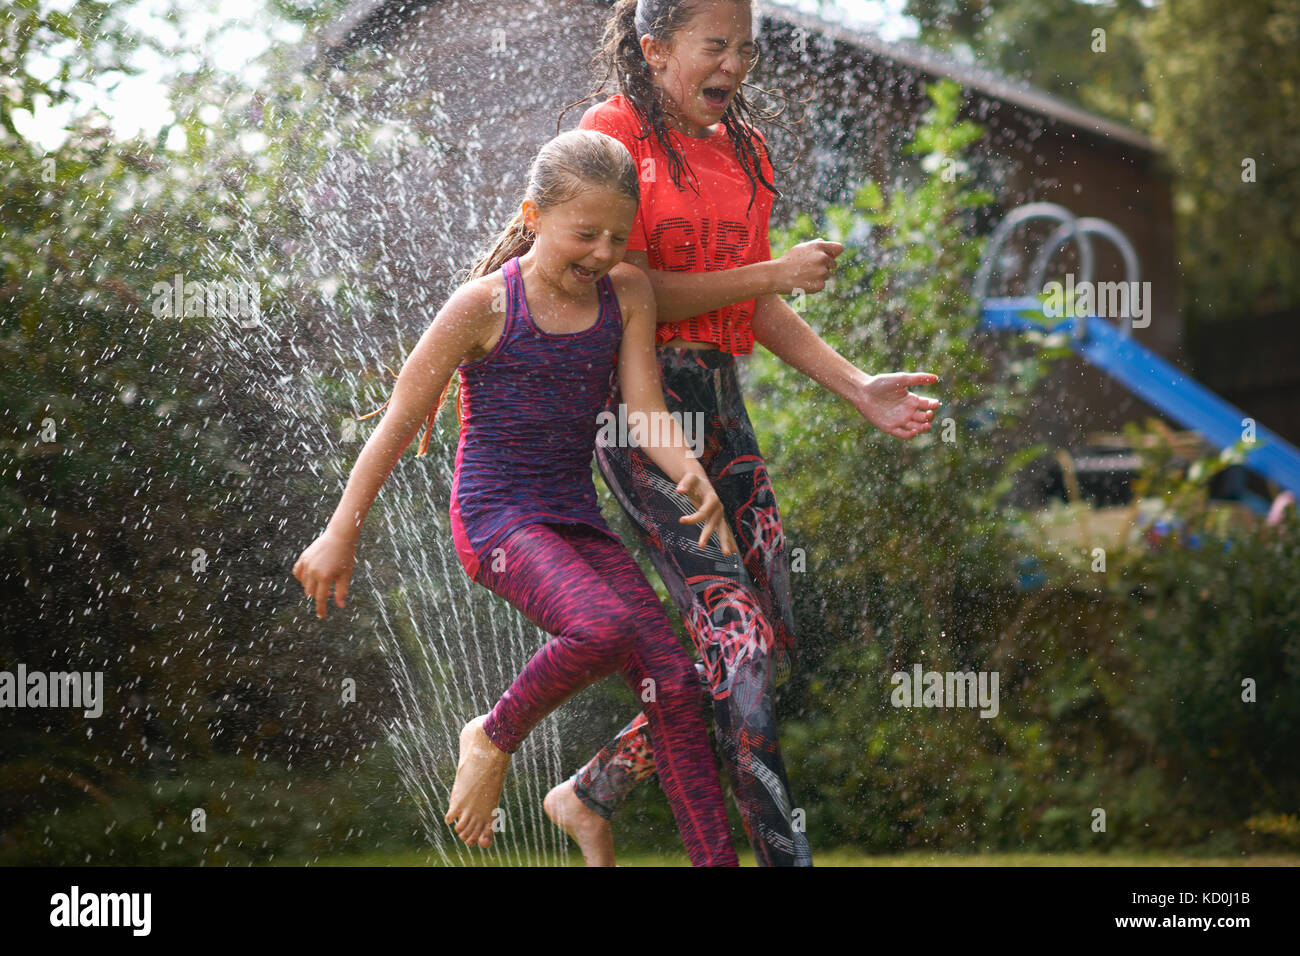 Les filles sautant sprinkleur jardin Banque D'Images